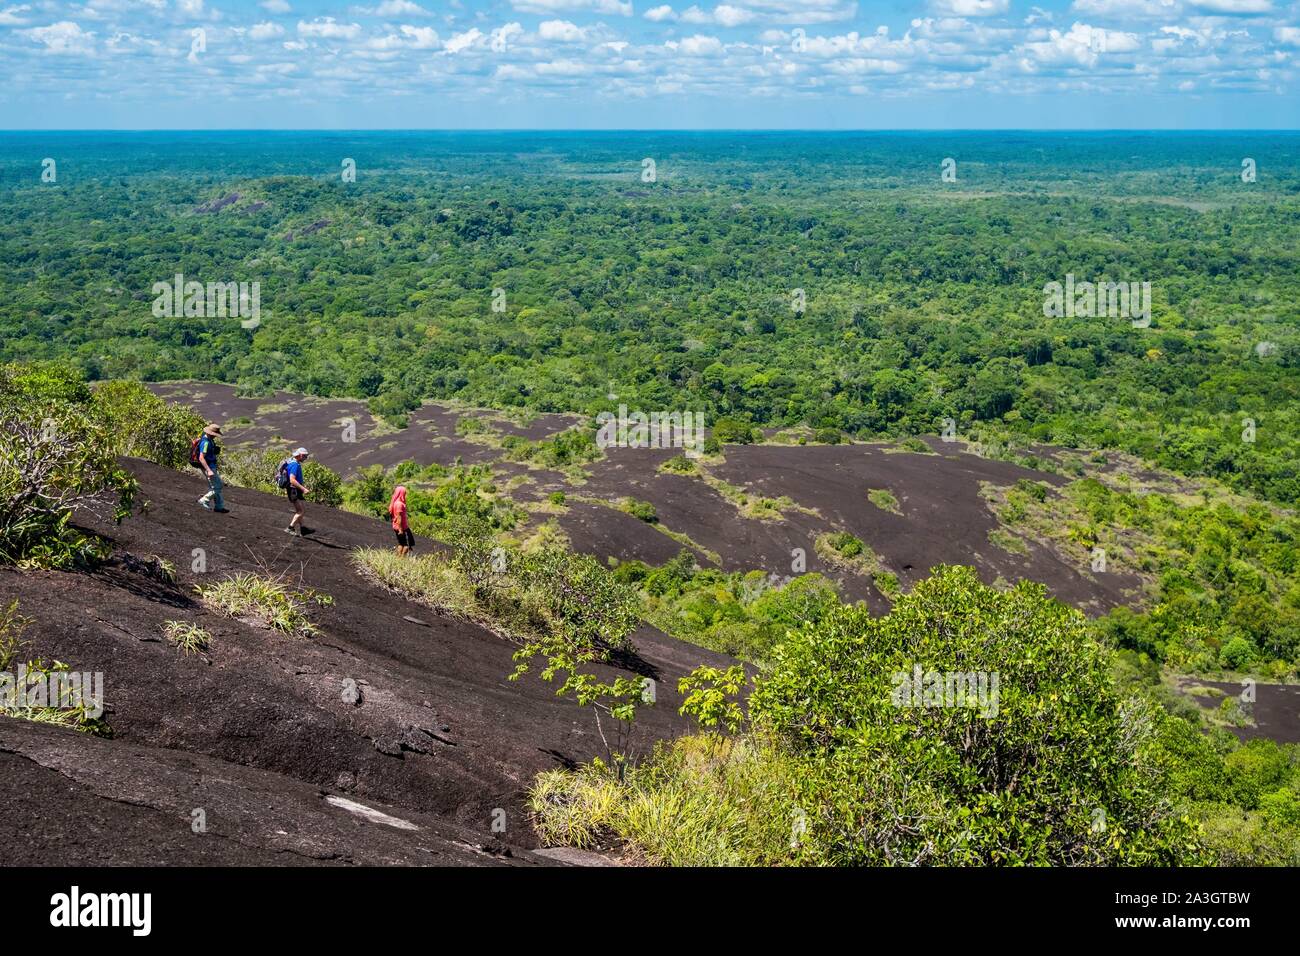 Colombia, Guainia, Inirida, Cerros de Mavicure, descent of the Cerro Diablo Stock Photo